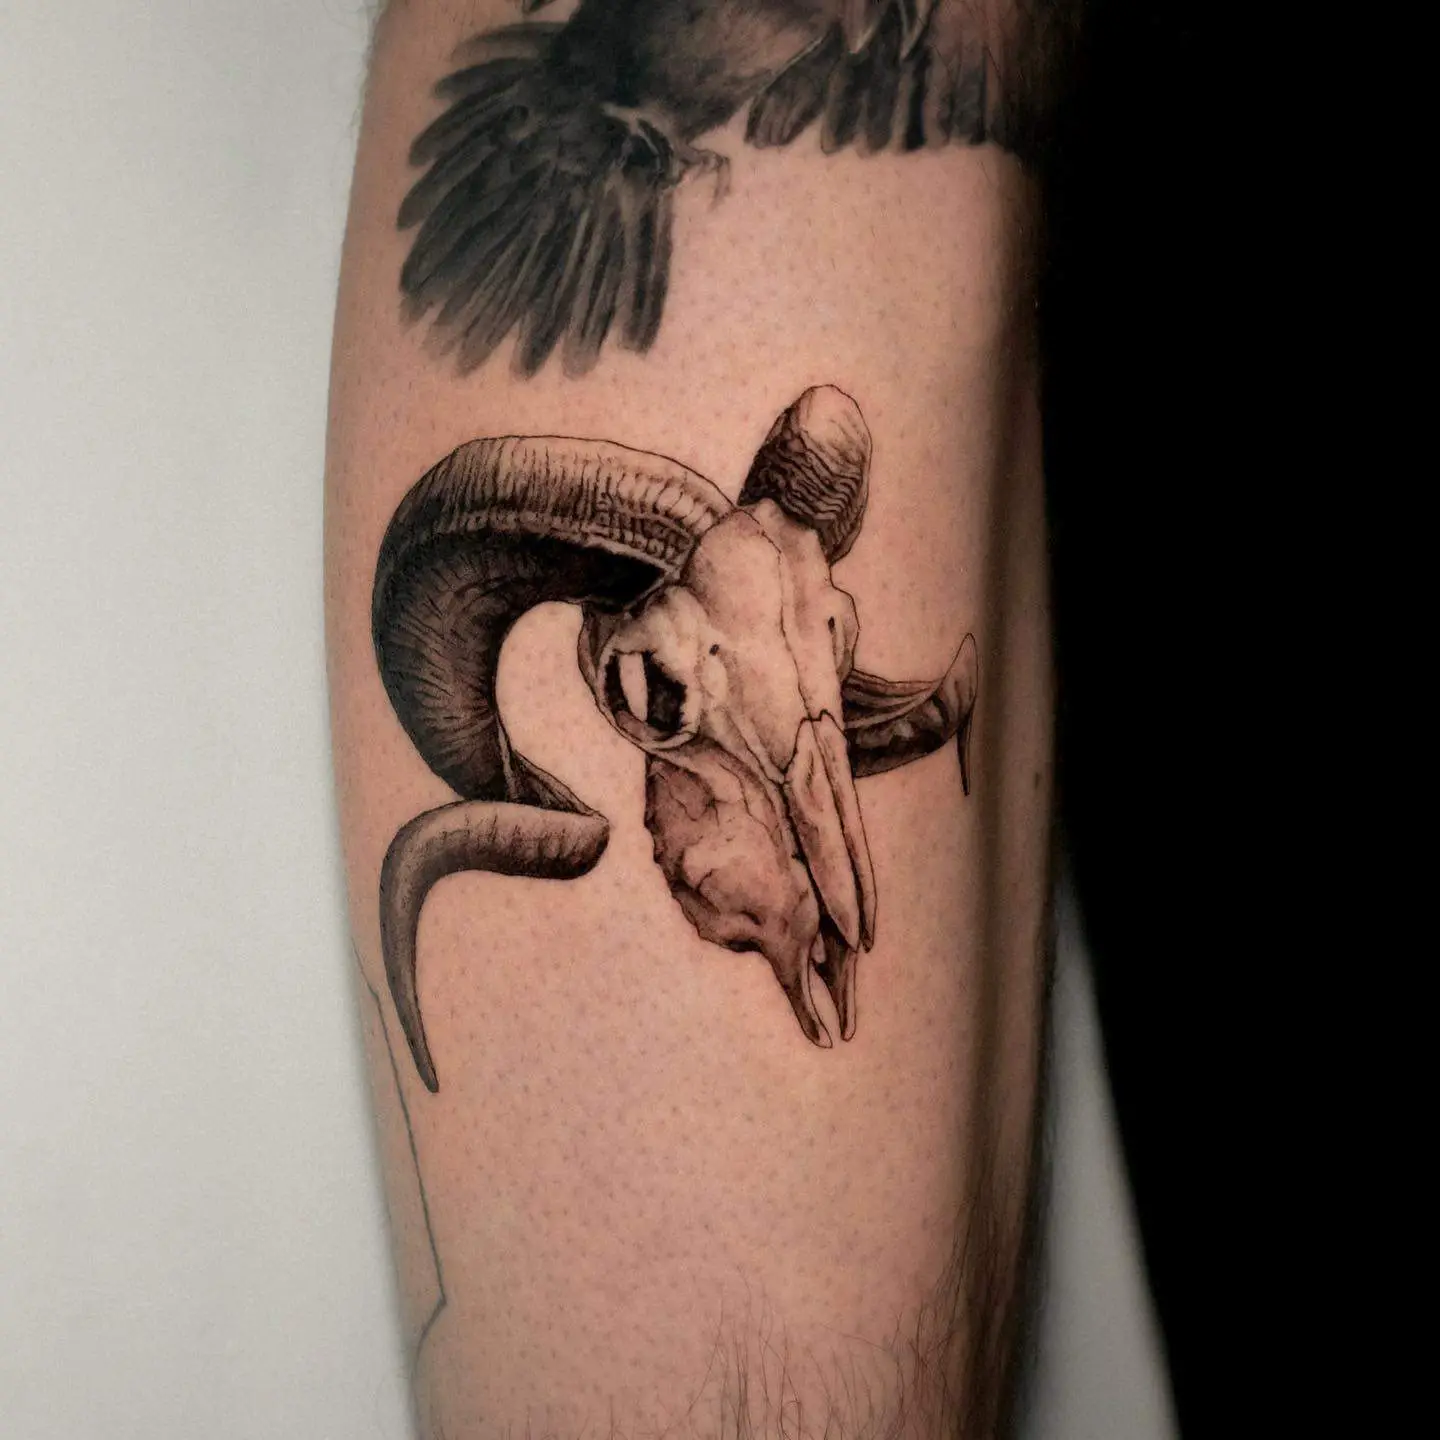 Aries tattoo by tattooist marco